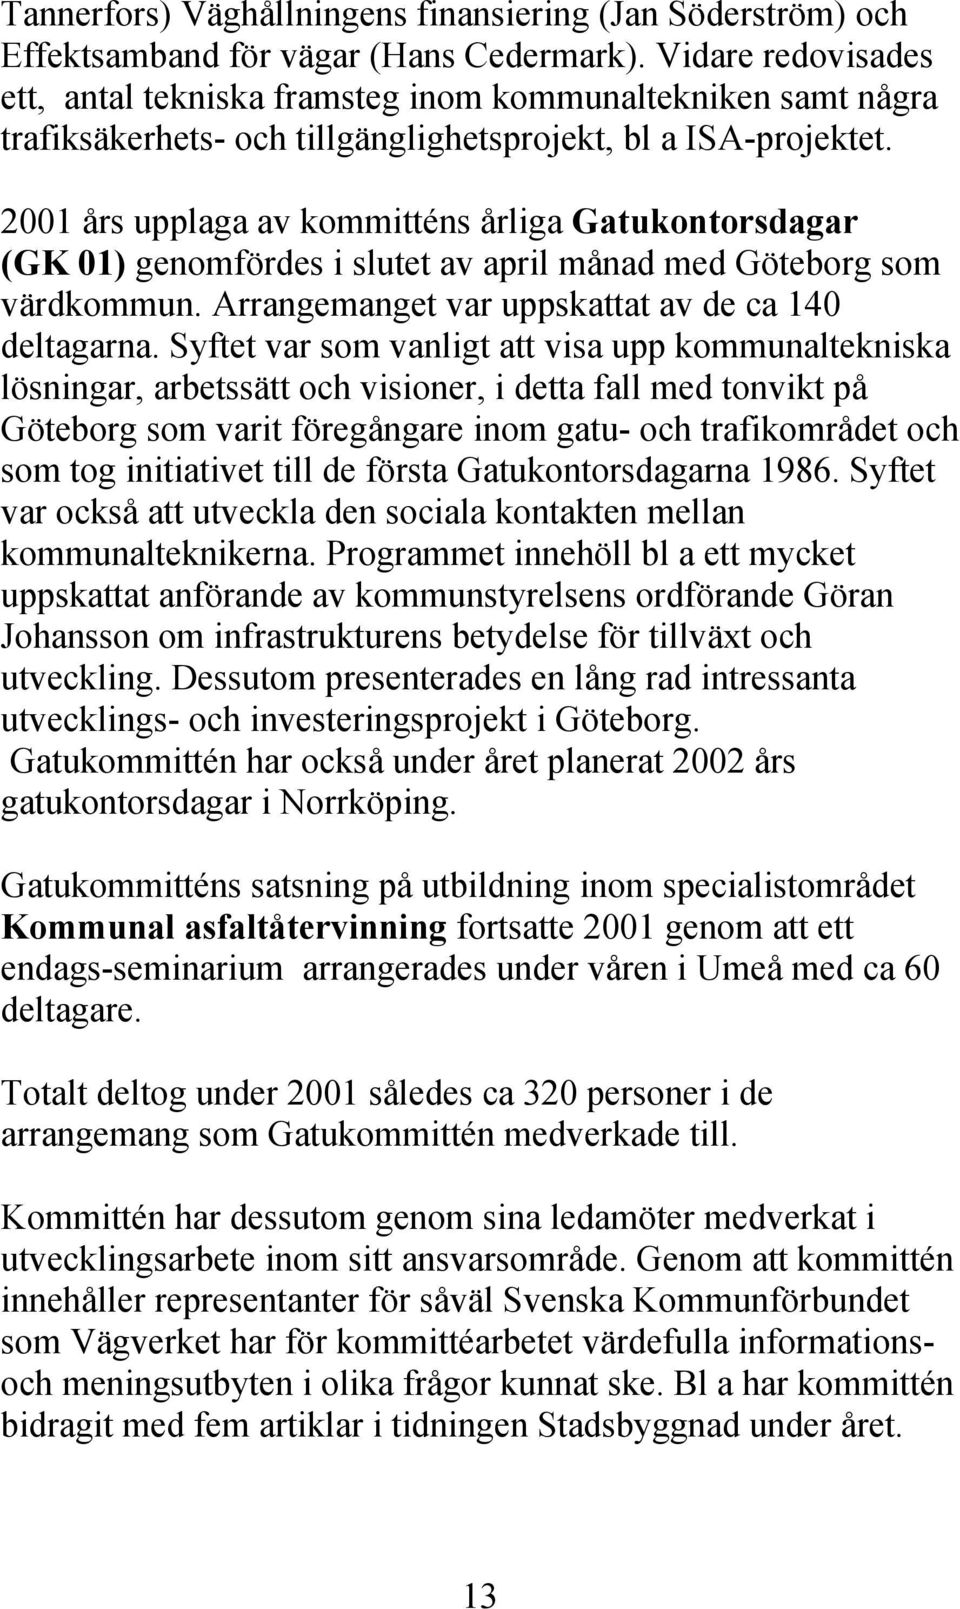 2001 års upplaga av kommitténs årliga Gatukontorsdagar (GK 01) genomfördes i slutet av april månad med Göteborg som värdkommun. Arrangemanget var uppskattat av de ca 140 deltagarna.